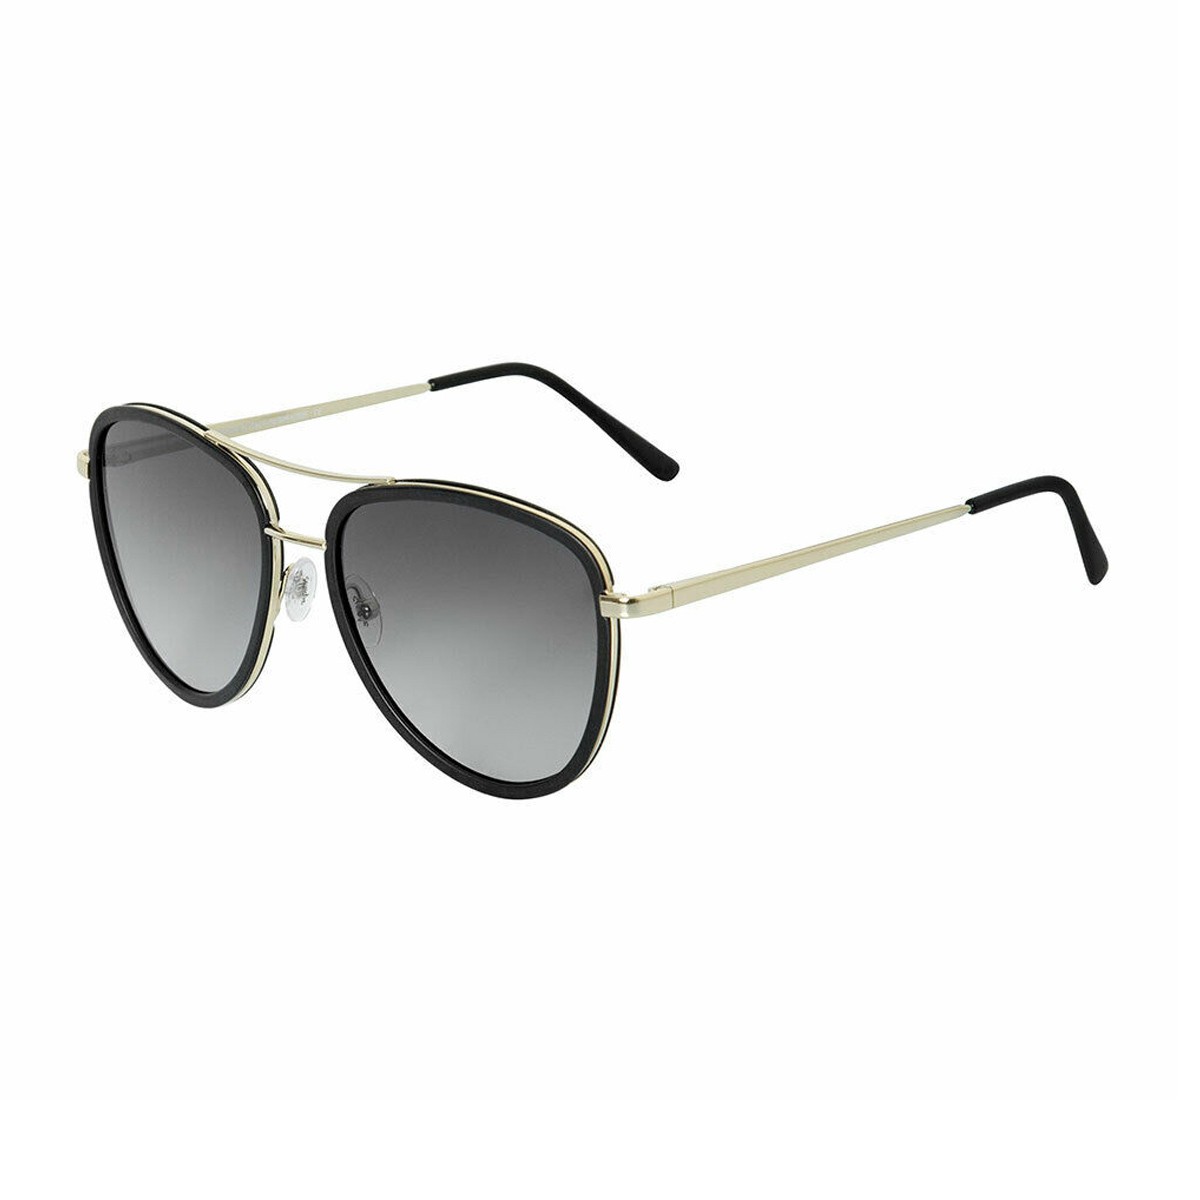 Saint tropez | Unisex sunglasses